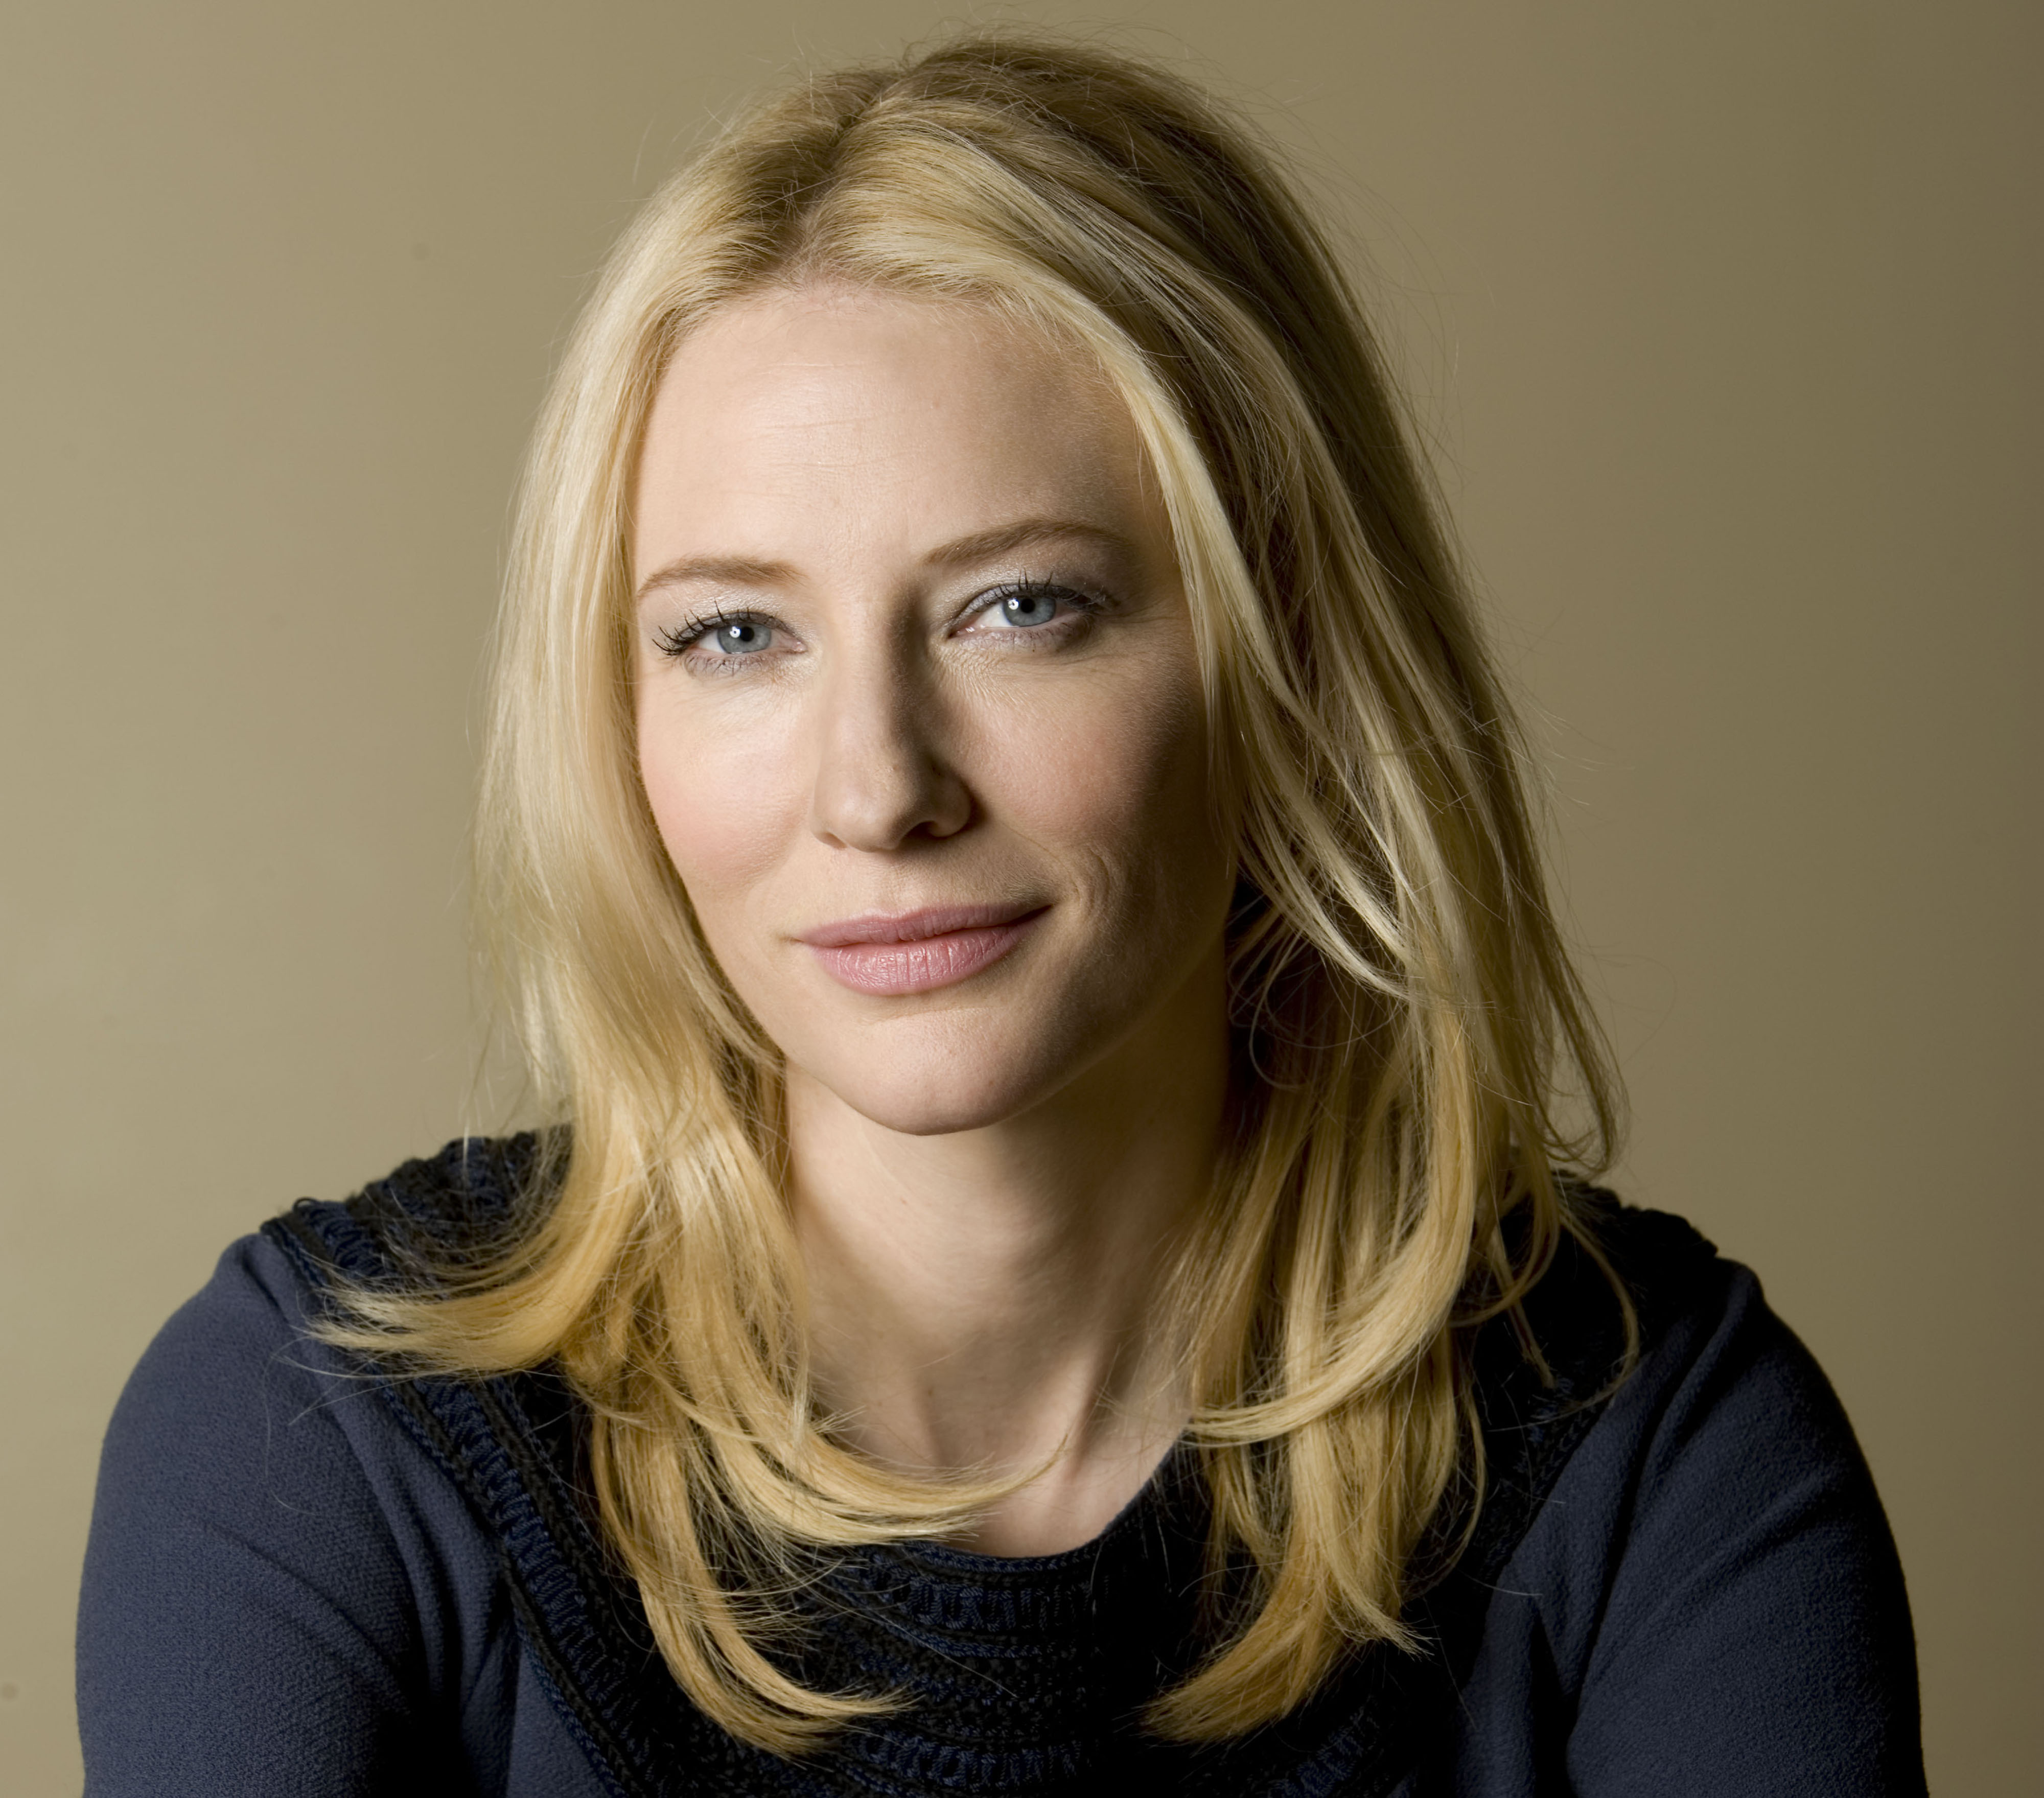 Cate Blanchett rendezőként is bemutatkozik